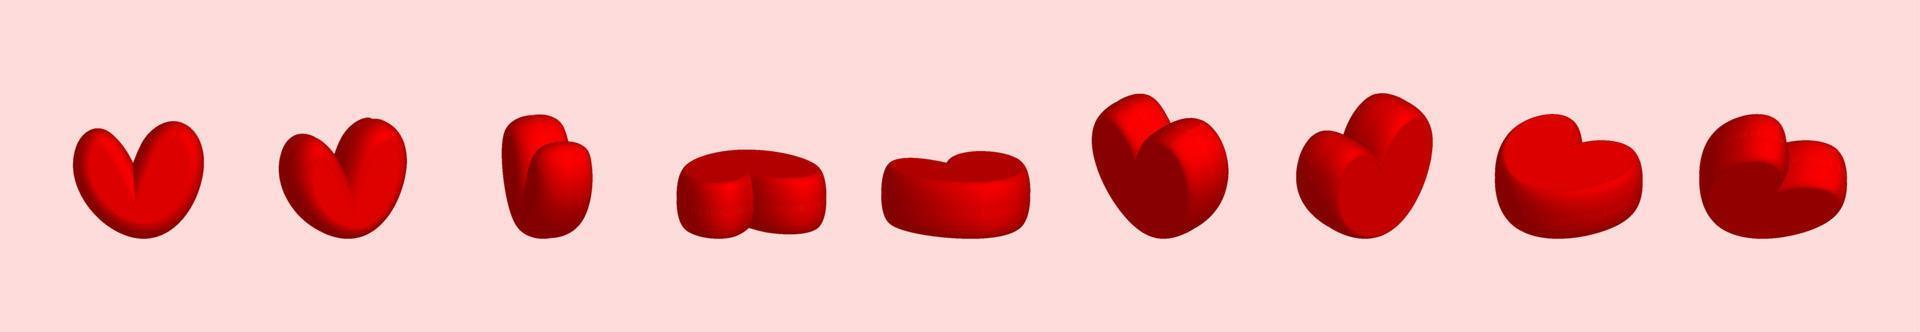 Herz-Icon-Set. Valentinstag Liebessymbol, 3D-Herzsymbol vorne und Drehwinkelansicht. vektor